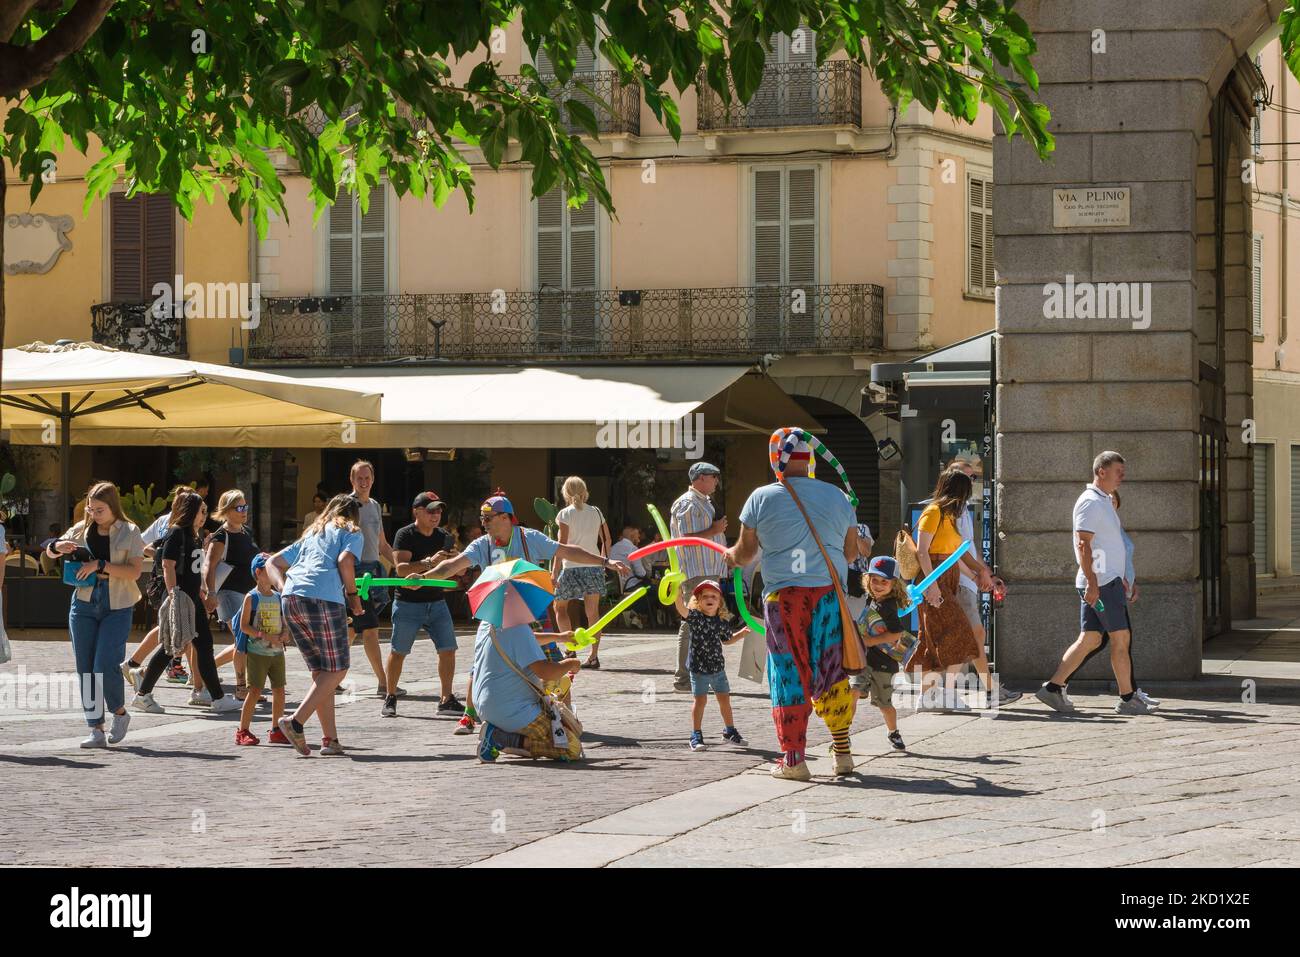 Los niños juegan, en verano los niños juegan luchando contra una banda de artistas callejeros con globos en el centro histórico de la ciudad de Como, Italia Foto de stock